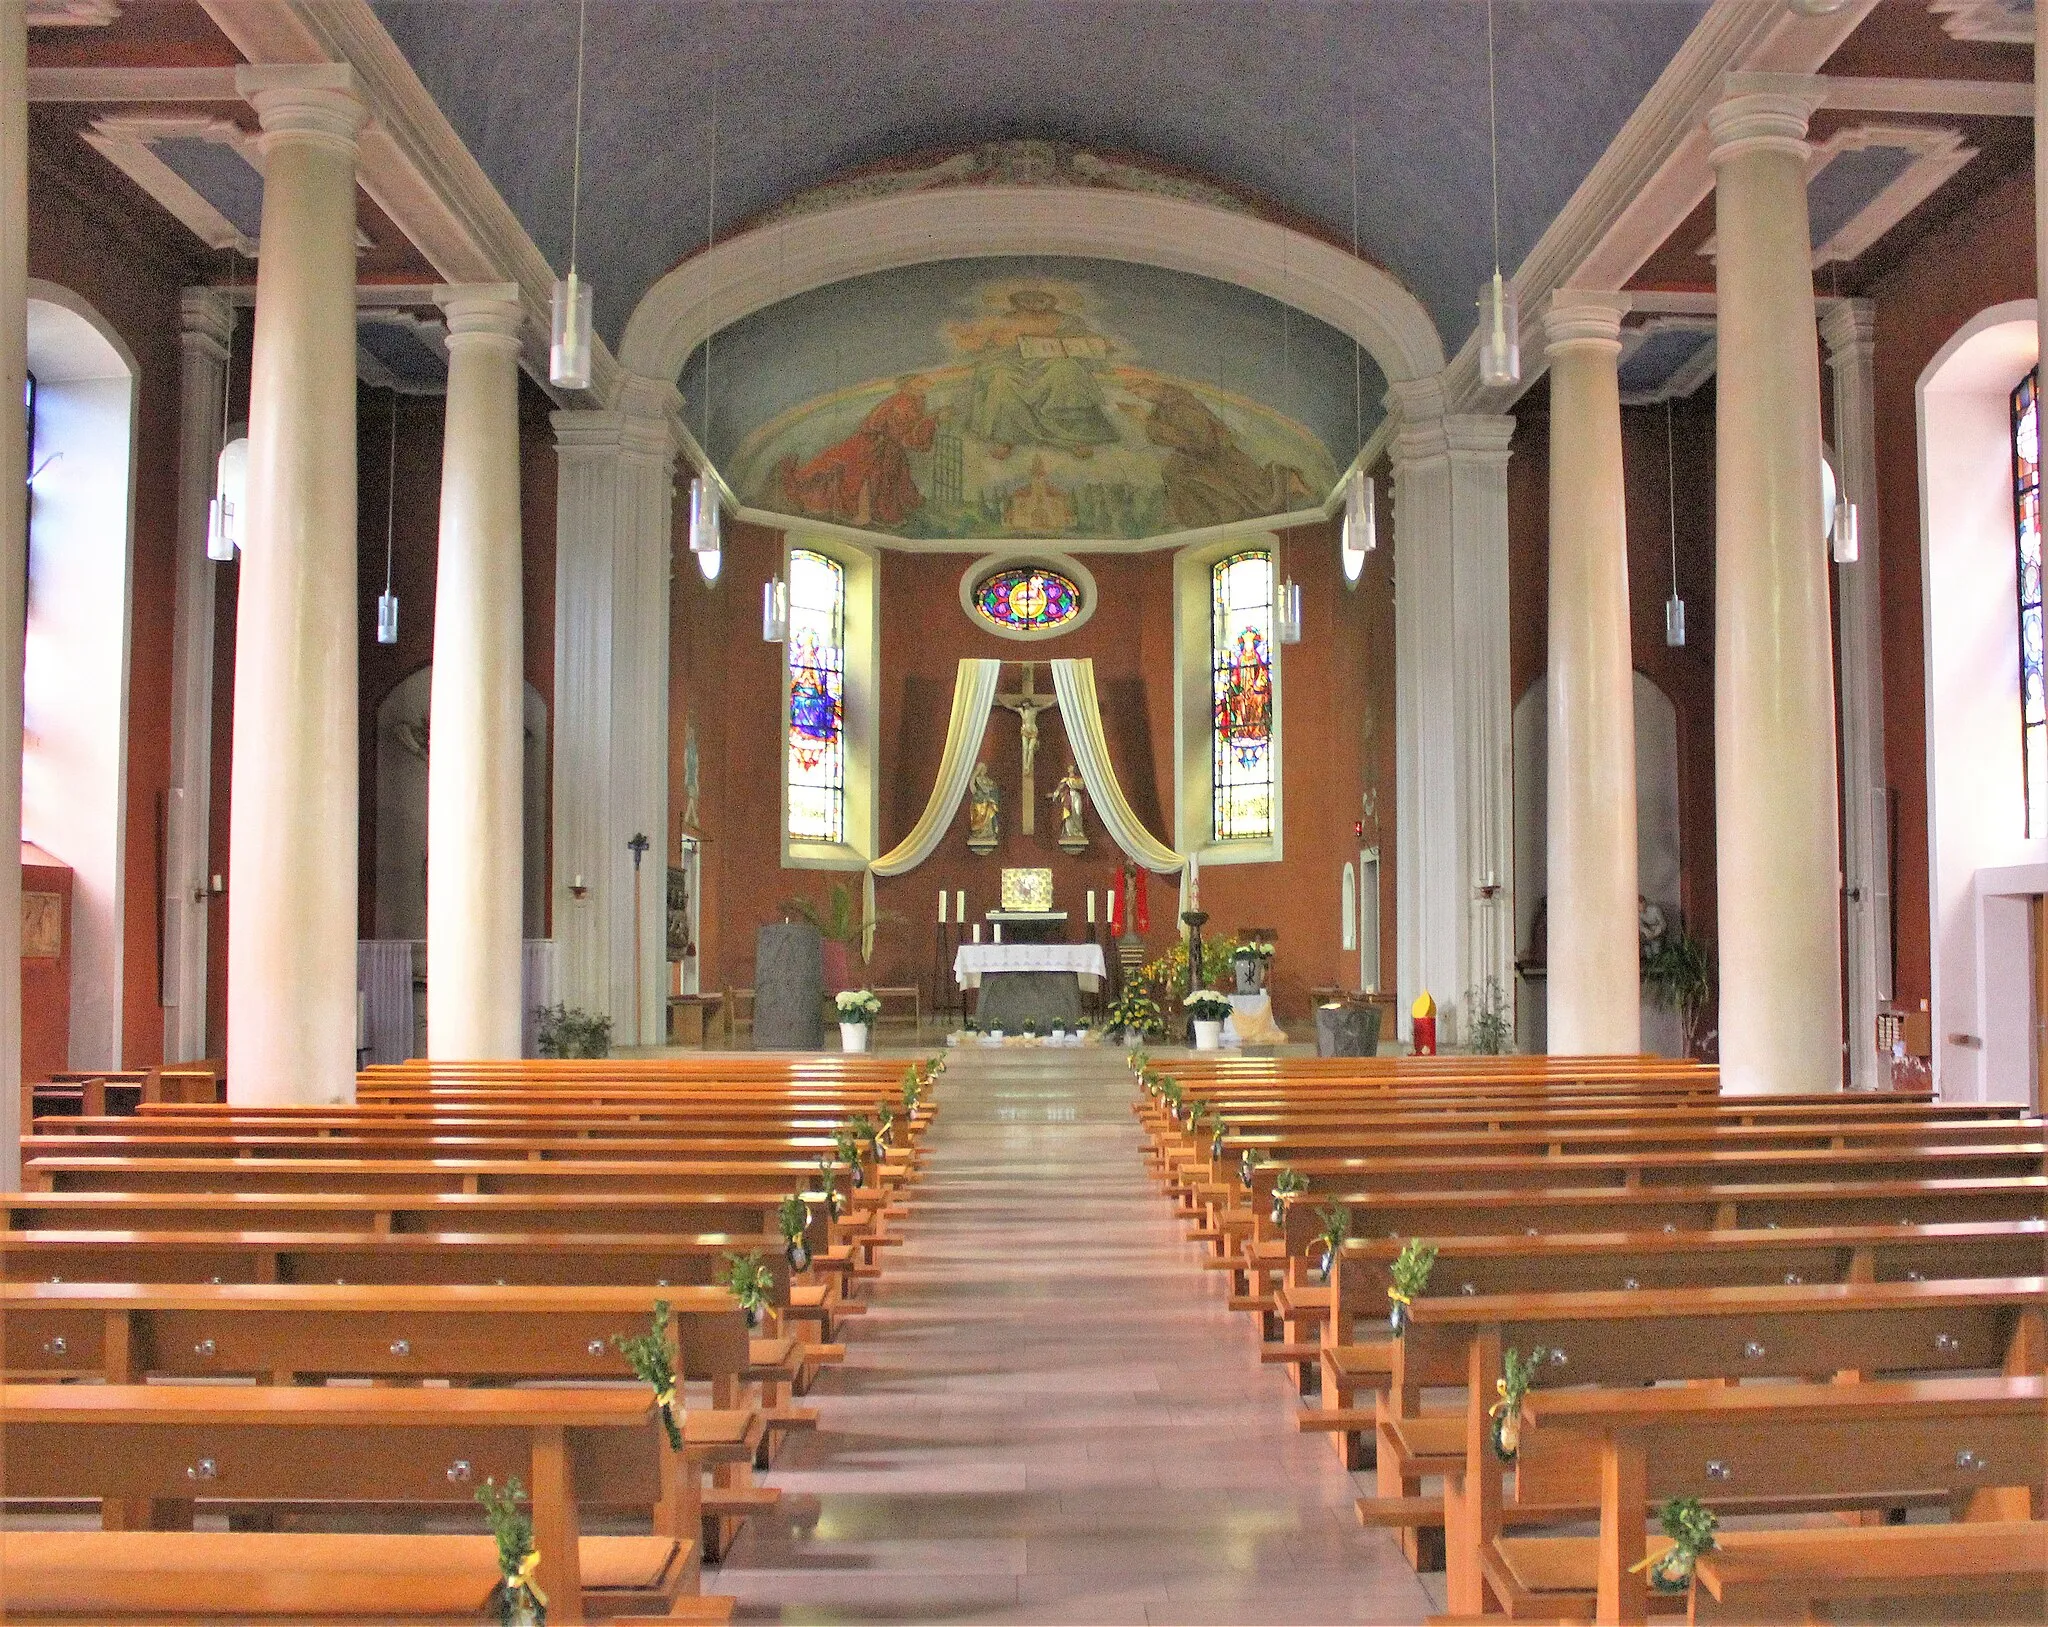 Photo showing: Blick ins Innere der katholischen Pfarrkirche St. Laurentius in Welschbach, einem Ortsteil der Gemeinde Illingen, Landkreis Neunkirchen, Saarland